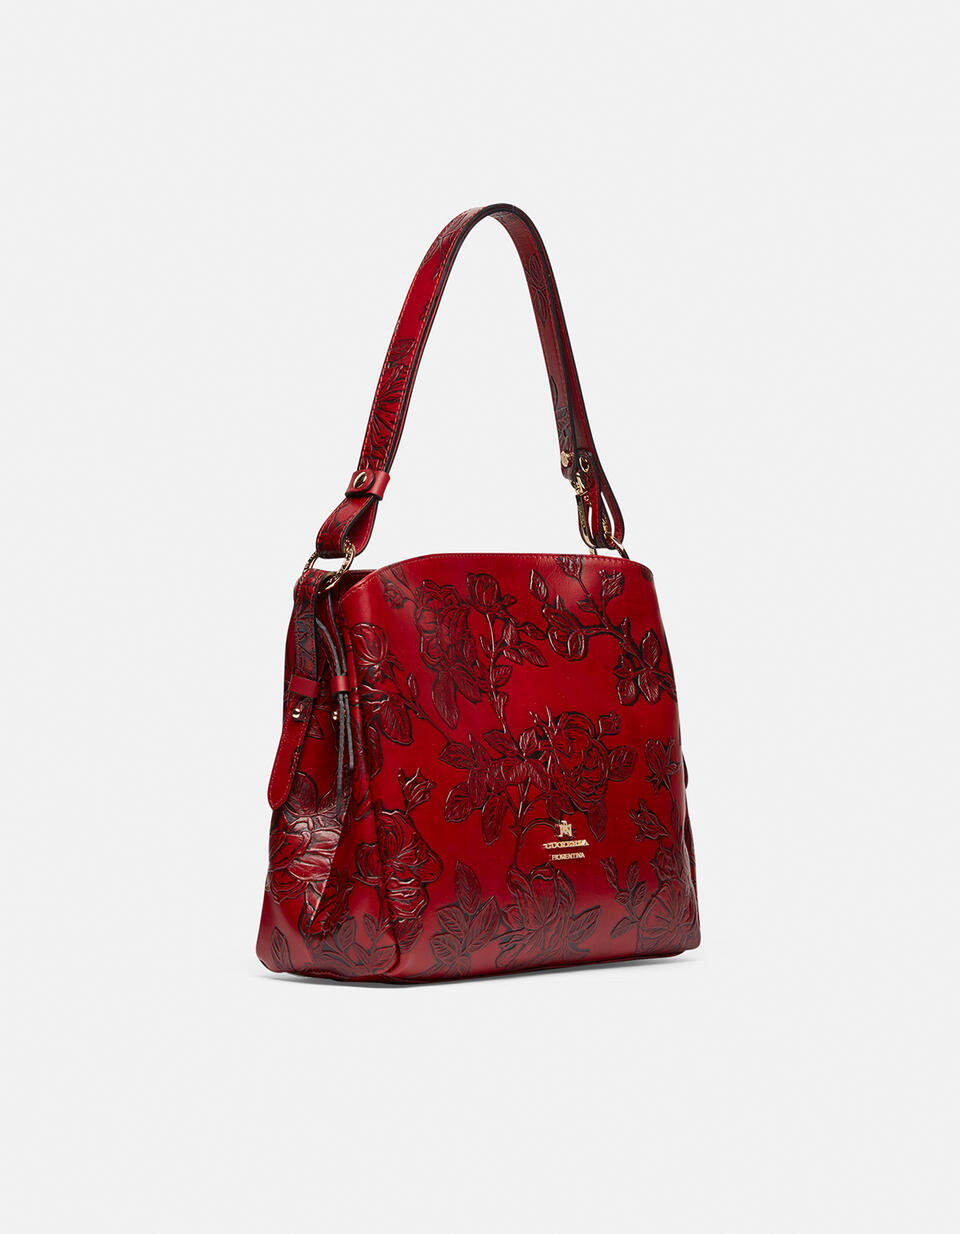 Medium Mimì casual shoulder bag - Shoulder Bags - WOMEN'S BAGS | bags ROSSO - Shoulder Bags - WOMEN'S BAGS | bagsCuoieria Fiorentina